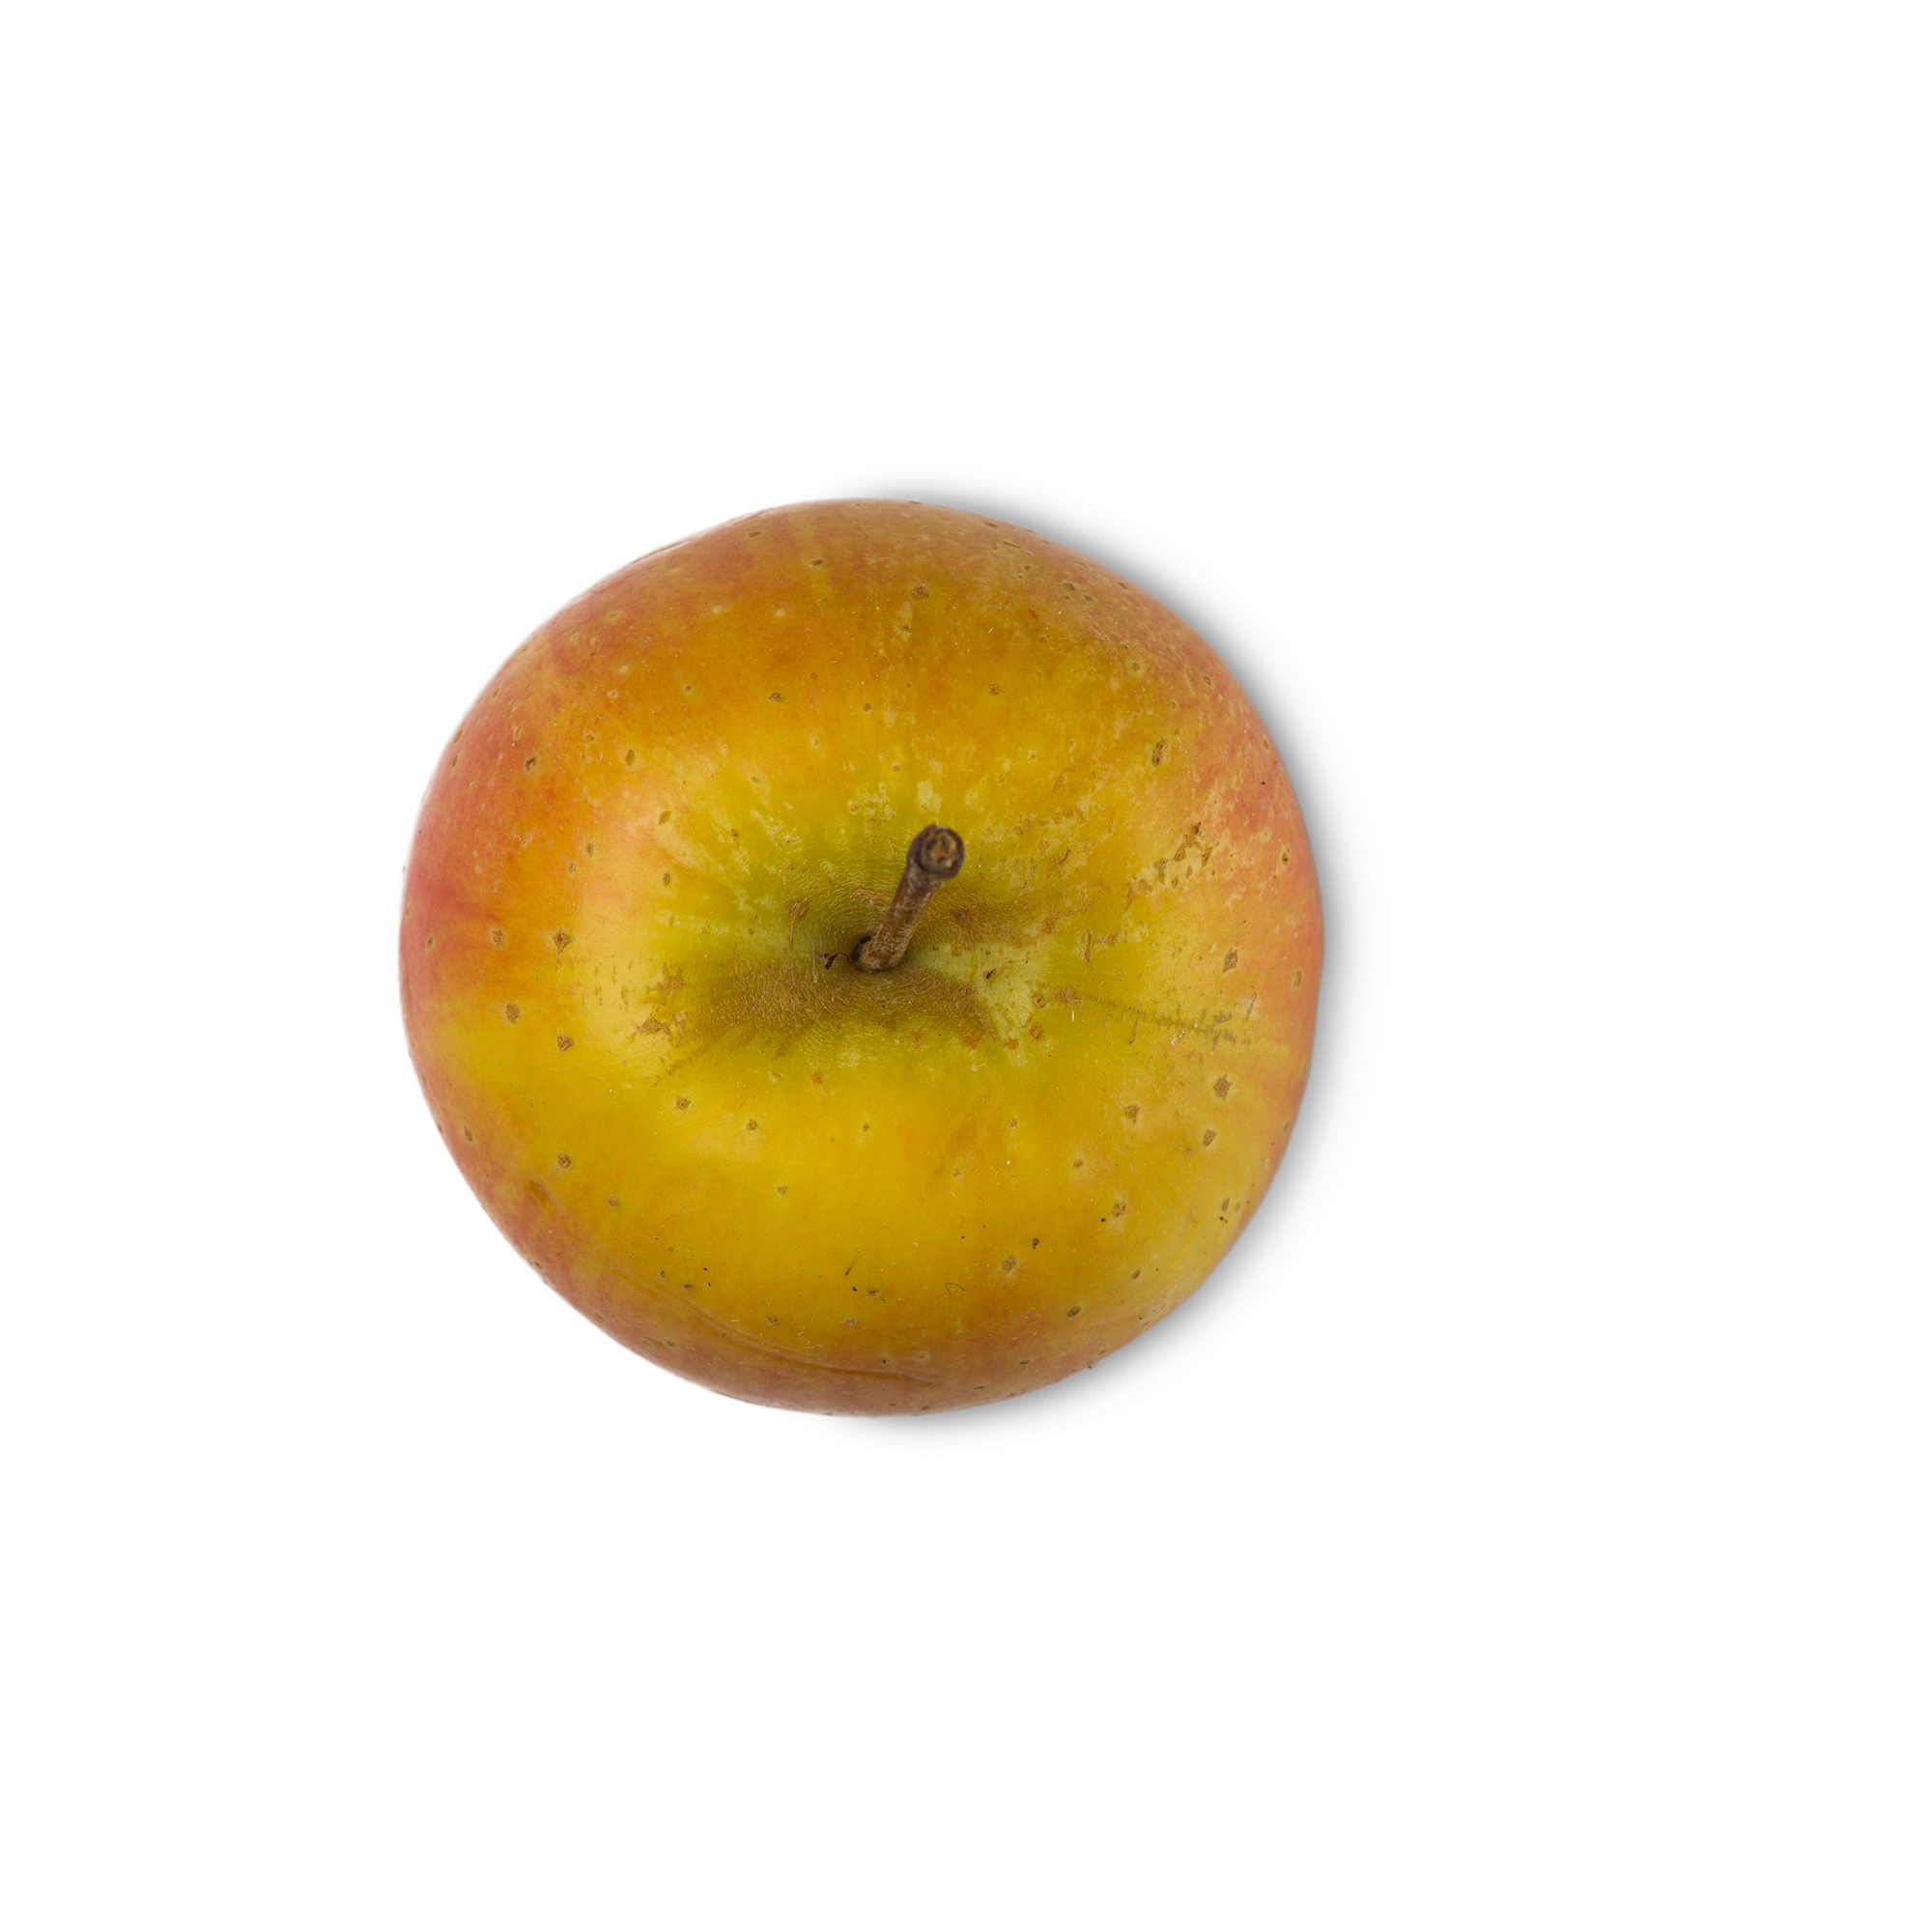 Malus Domestica Fruit Extract (jabłka w proszku)